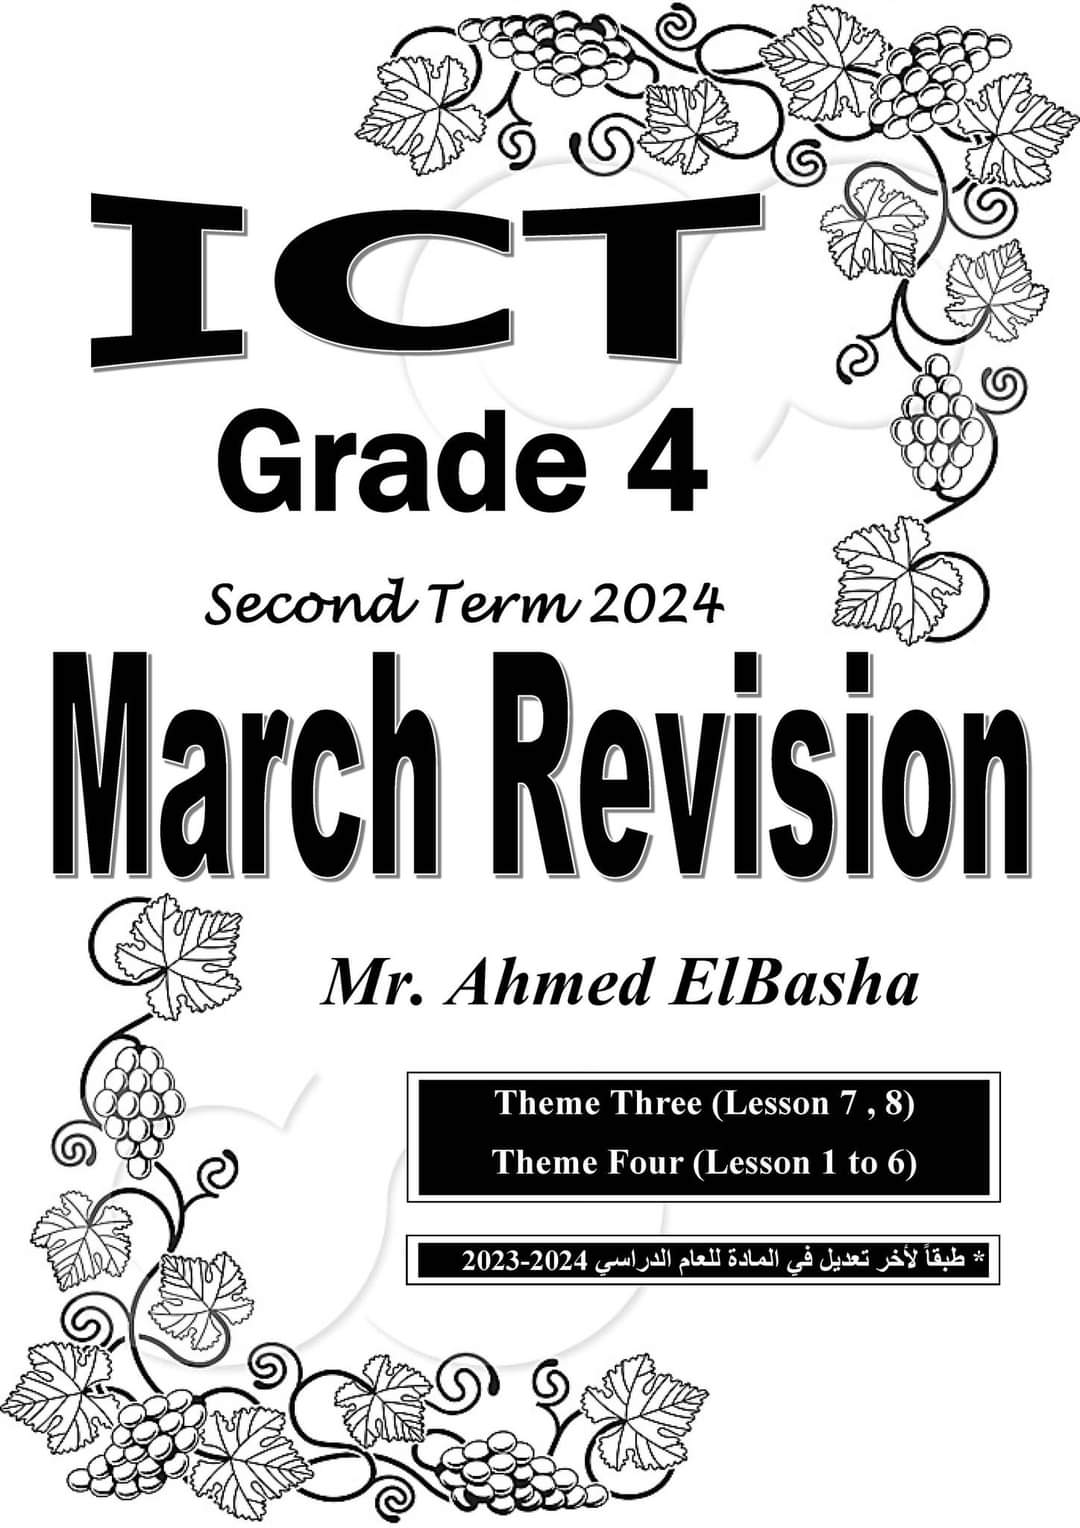 ملزمة مراجعة مقرر مارس ICT الصف الرابع الابتدائي لمستر احمد الباشا